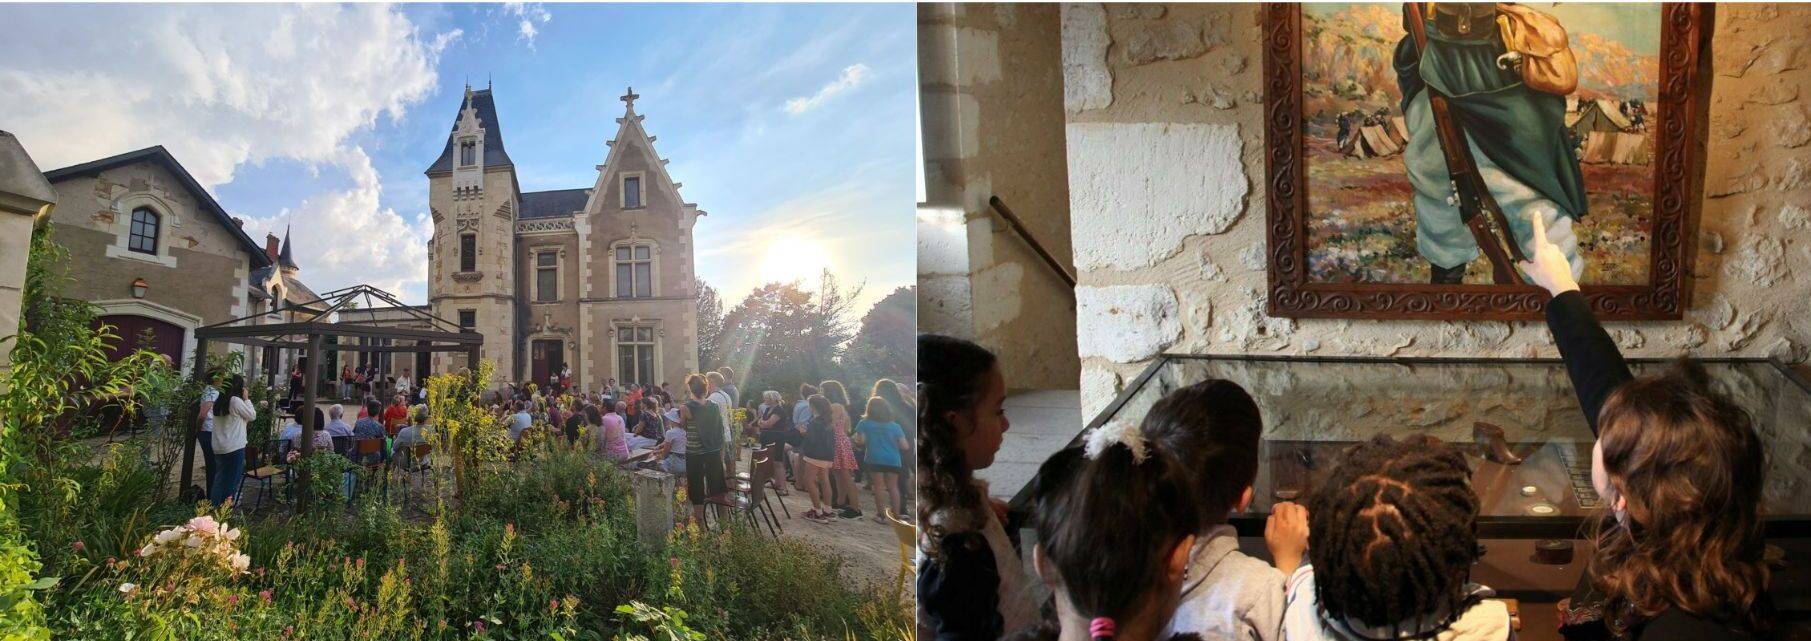 Crépuscule sur la demeure de Henri Barré (79) et visites animées par les élèves de l'école Edmond-Rostand à Bergerac (24)